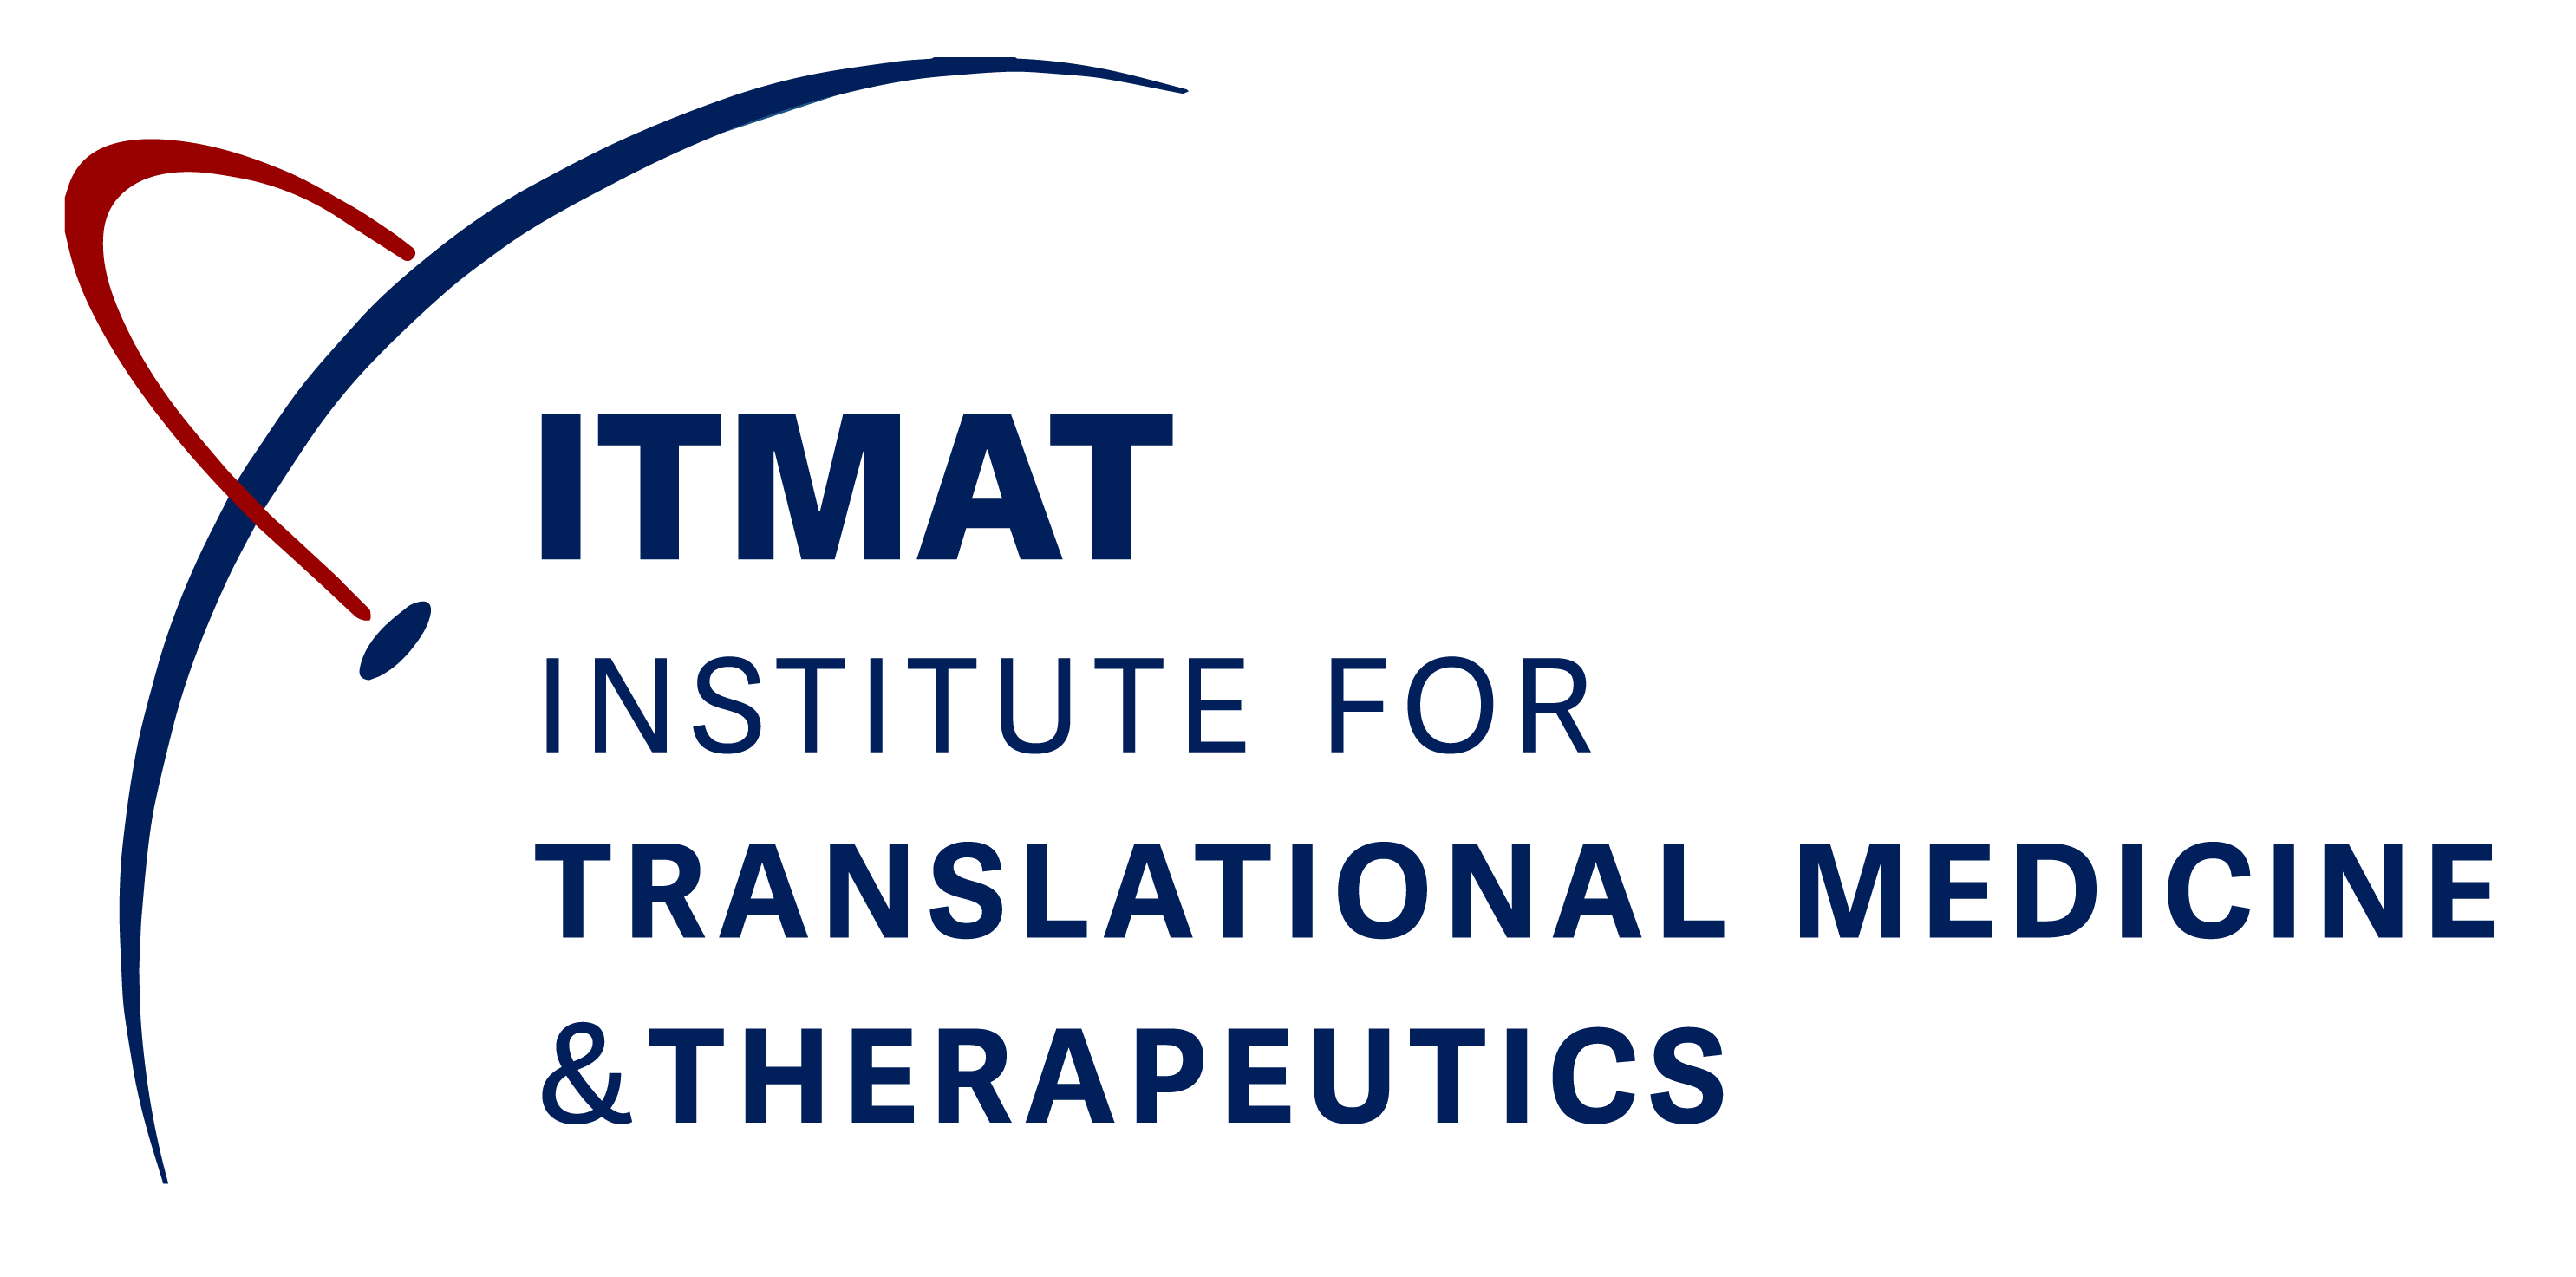 ITMAT - Institute for Translational Medicine & Therapeutics